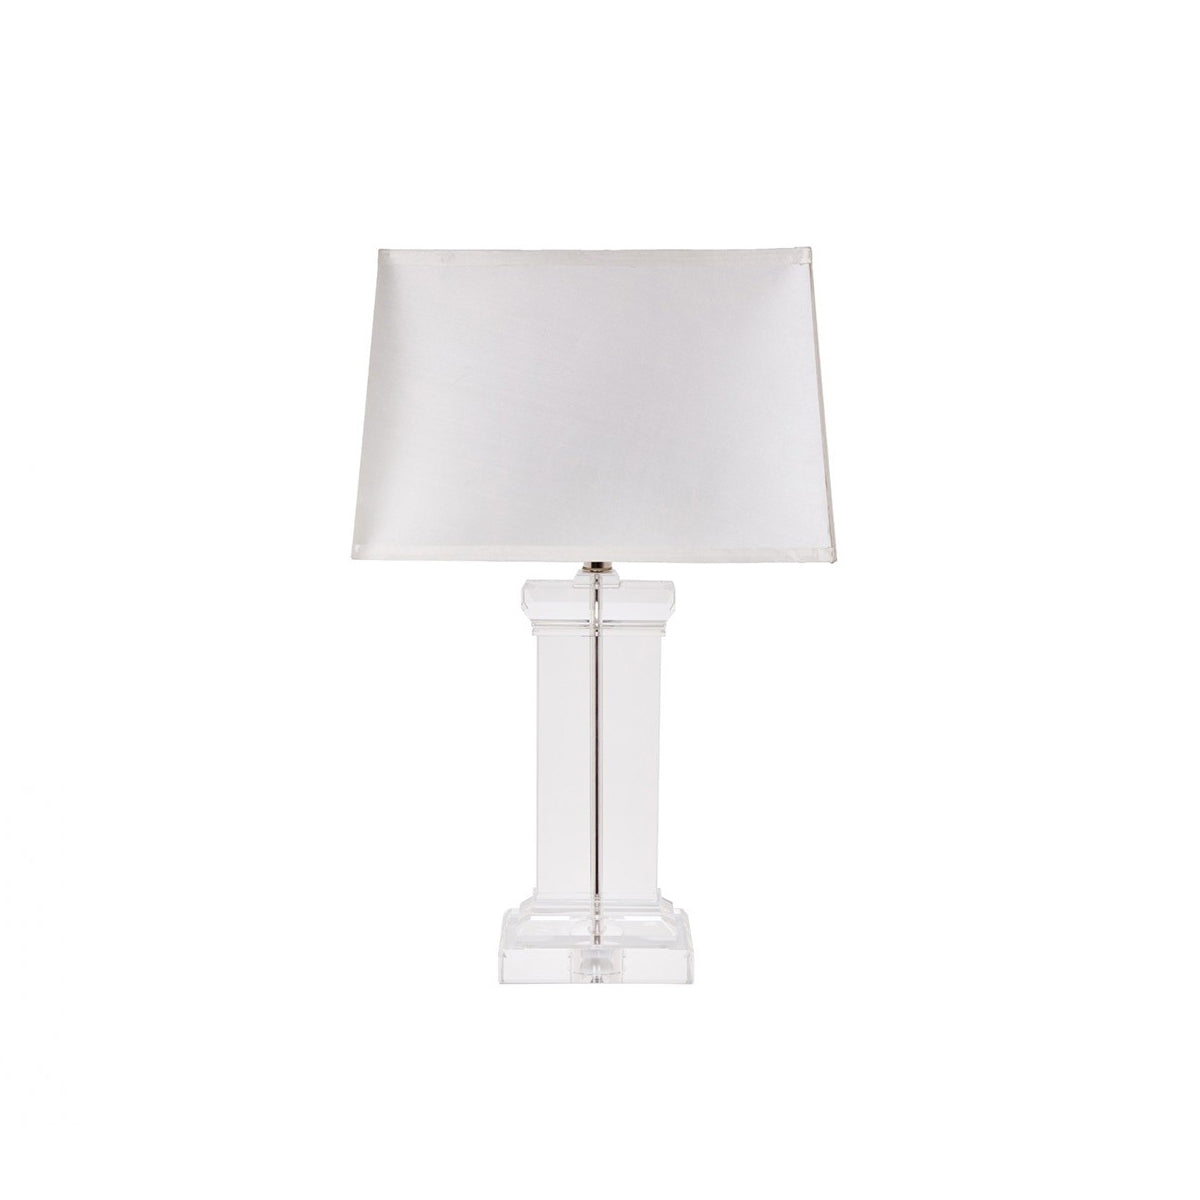 RV Astley Cielo Table Lamp